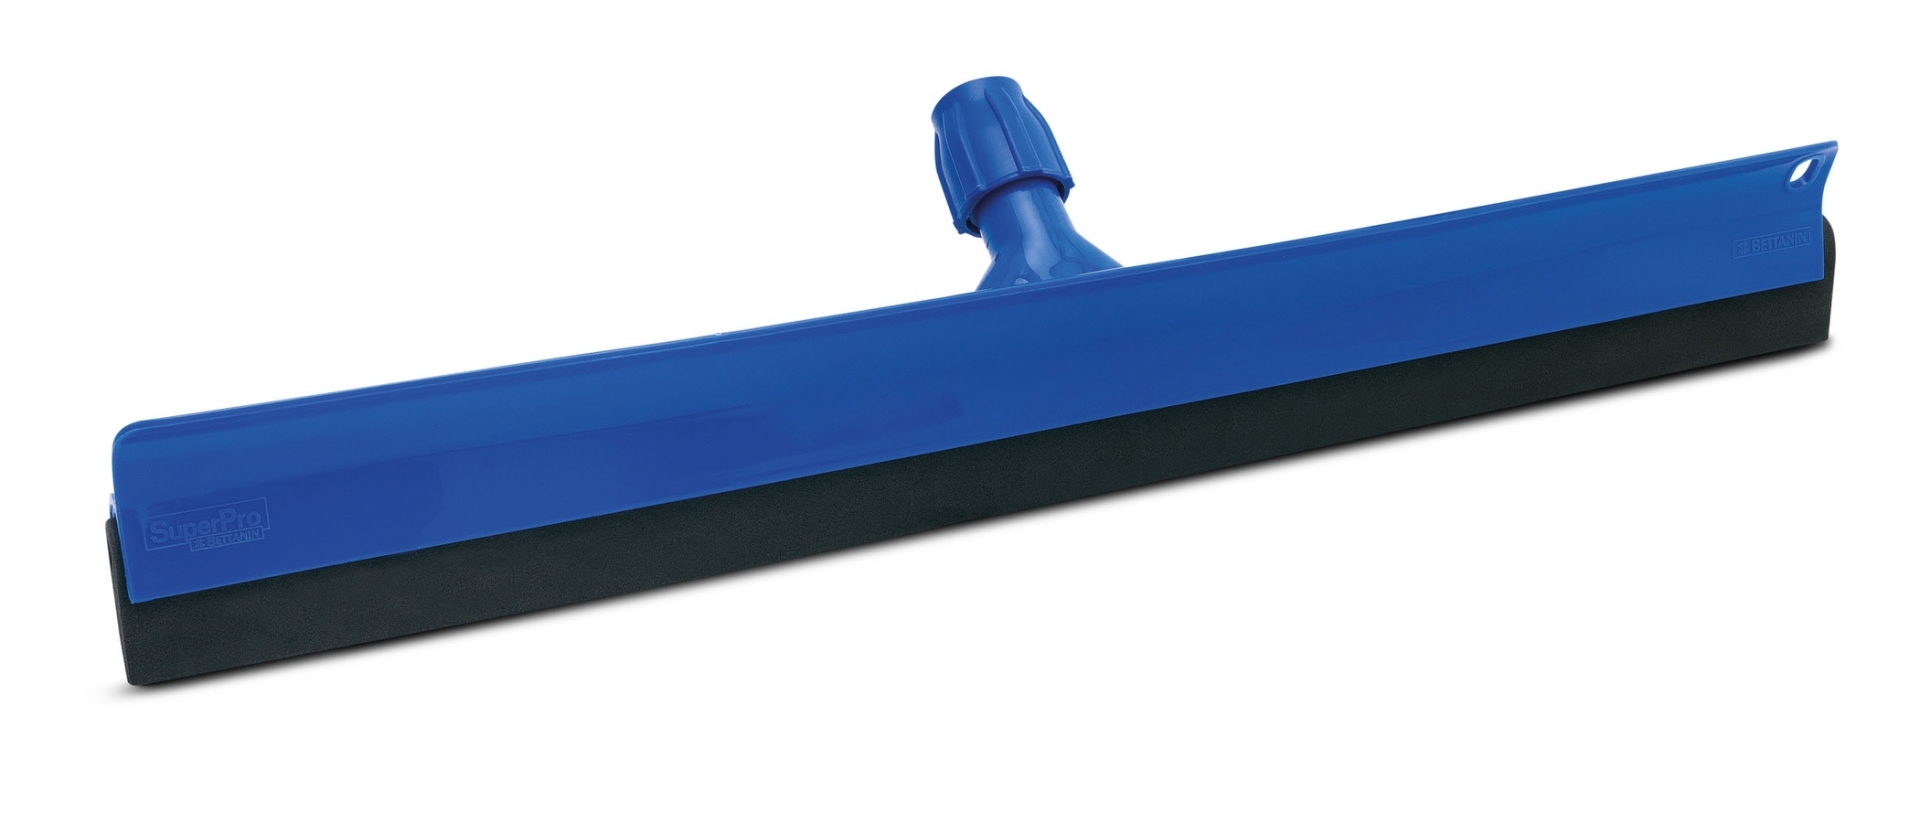 Rodo plastico duplo 65 centimetros azul sem cabo SP9055/9158AZ superpro